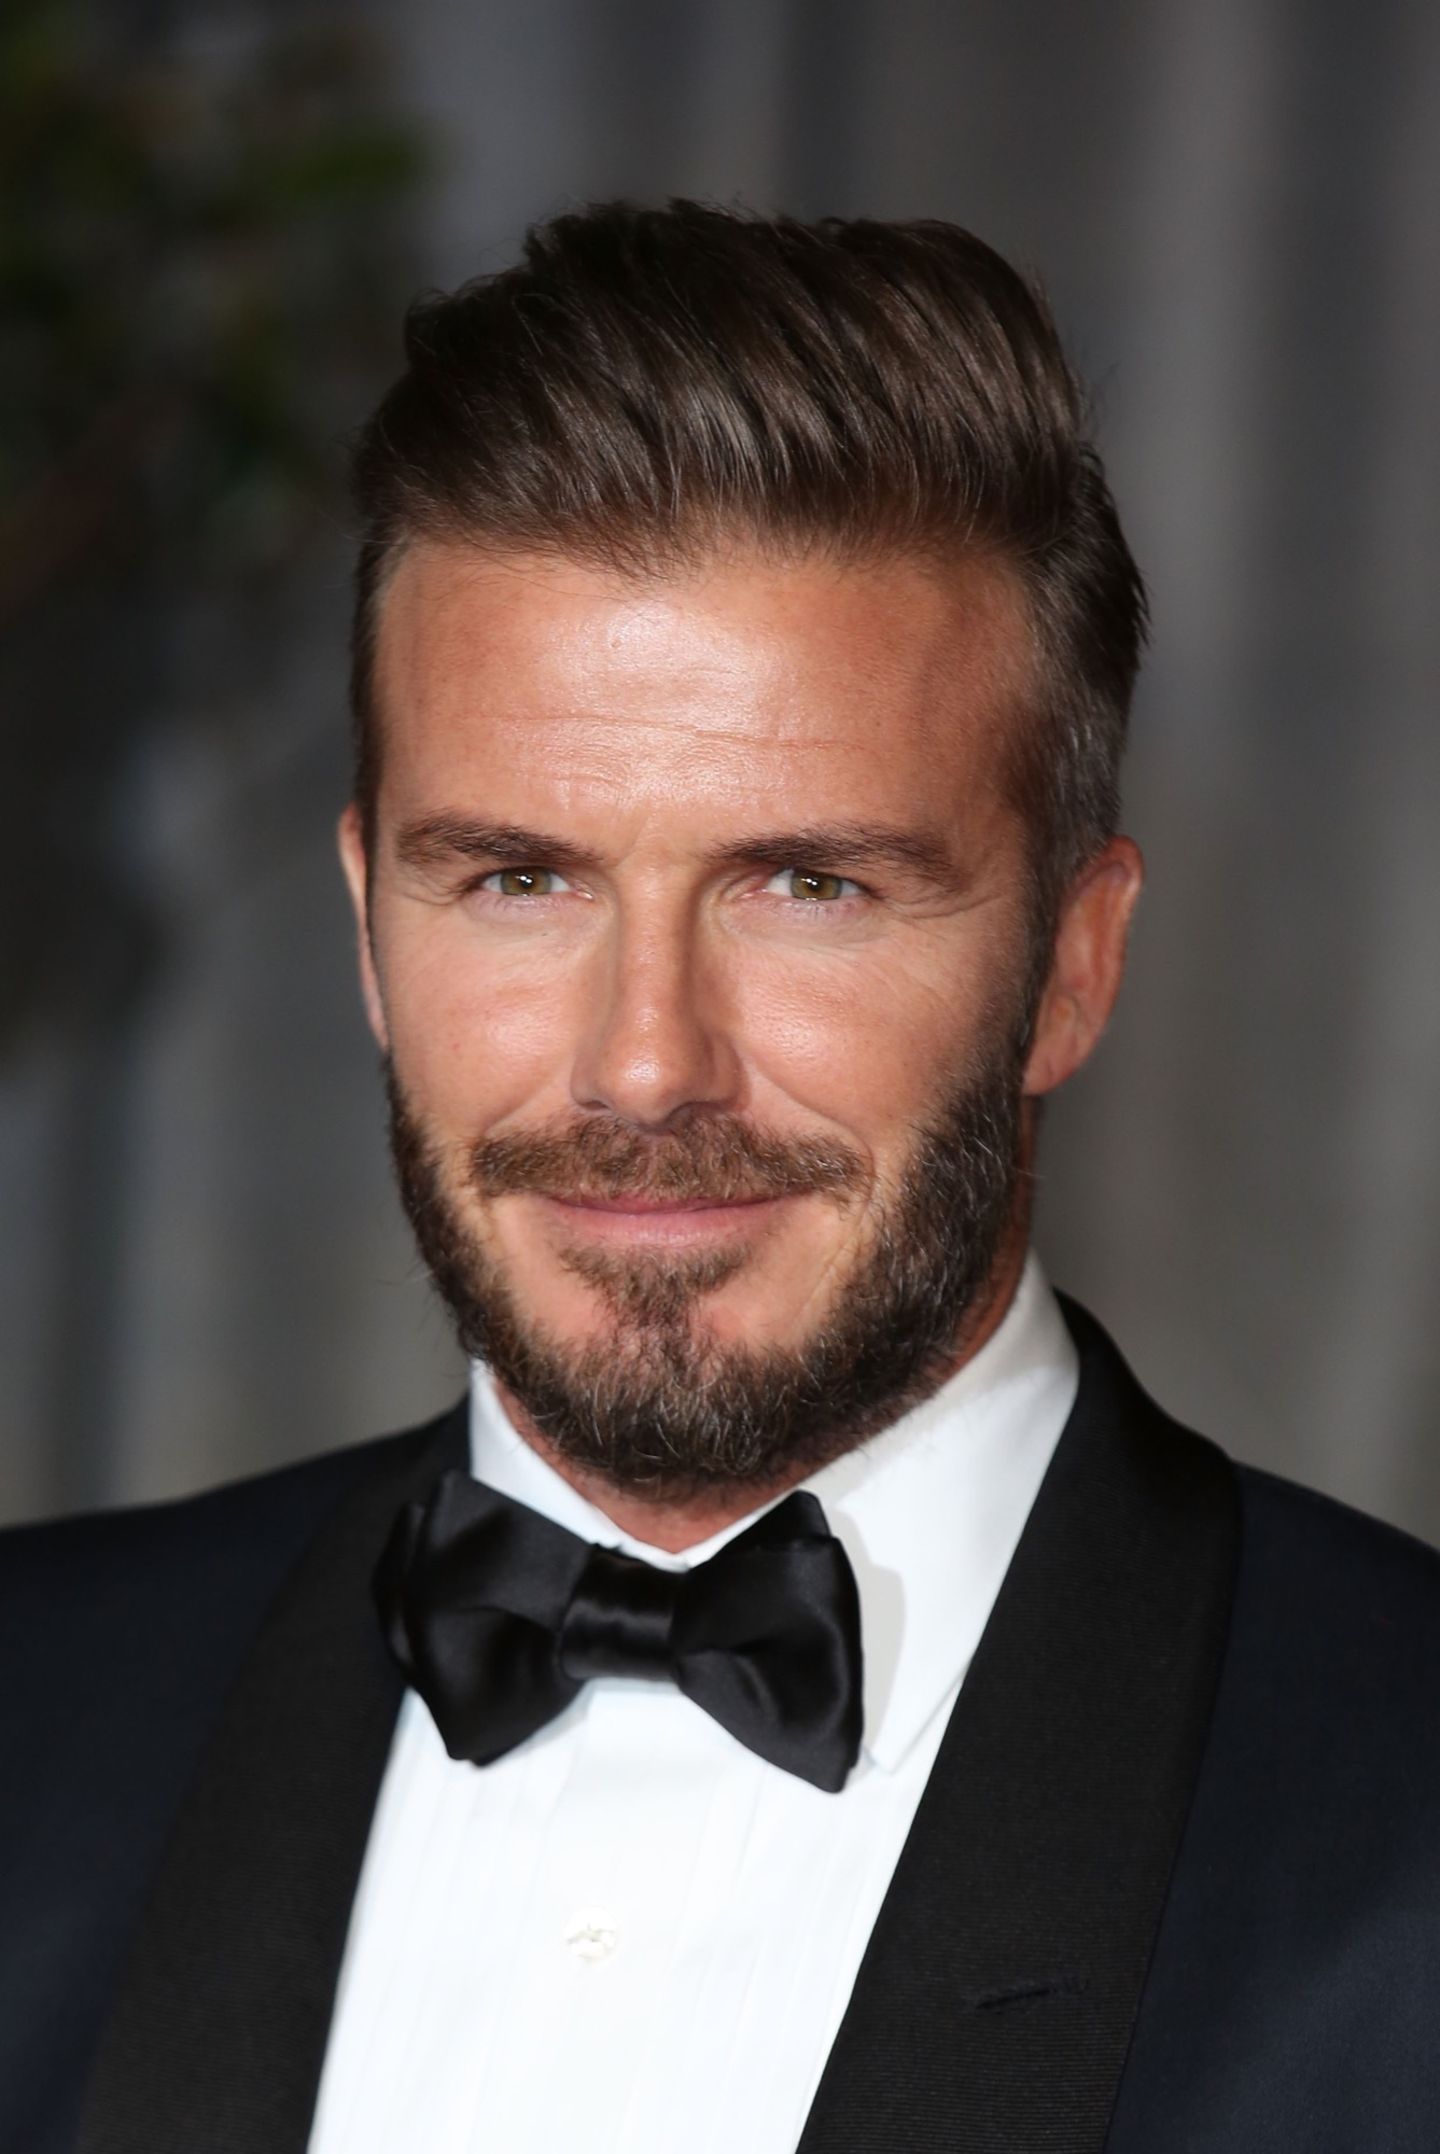 Sexiest Man Alive 2015 - David Beckham